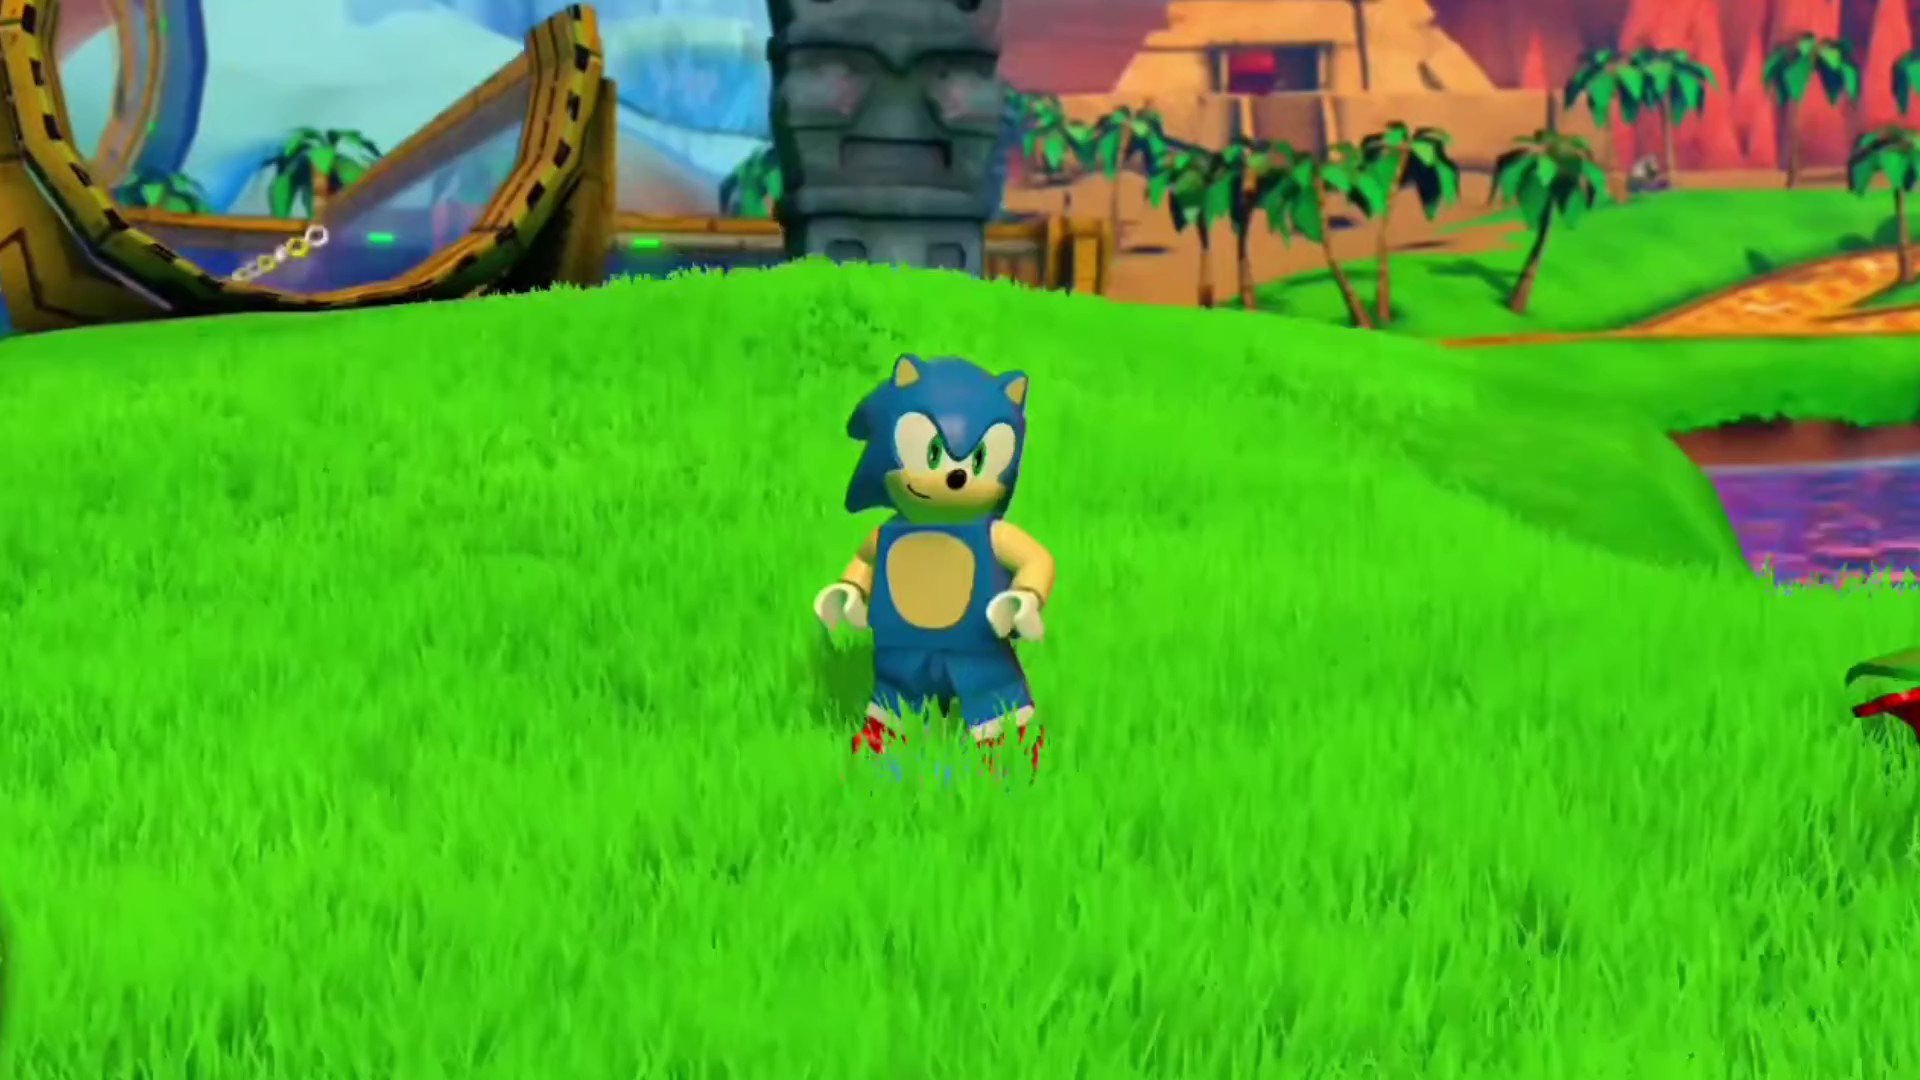 Hình ảnh của Sonic trong hoạt hình Lego Dimensions đã tạo ra một sức hút không chỉ đối với trẻ em mà còn với người lớn. Hãy cùng xem những chiếc điện thoại cầm tay của Sonic trong hoạt hình này nhảy múa và thực hiện các hoạt động nghỉ ngơi độc đáo.